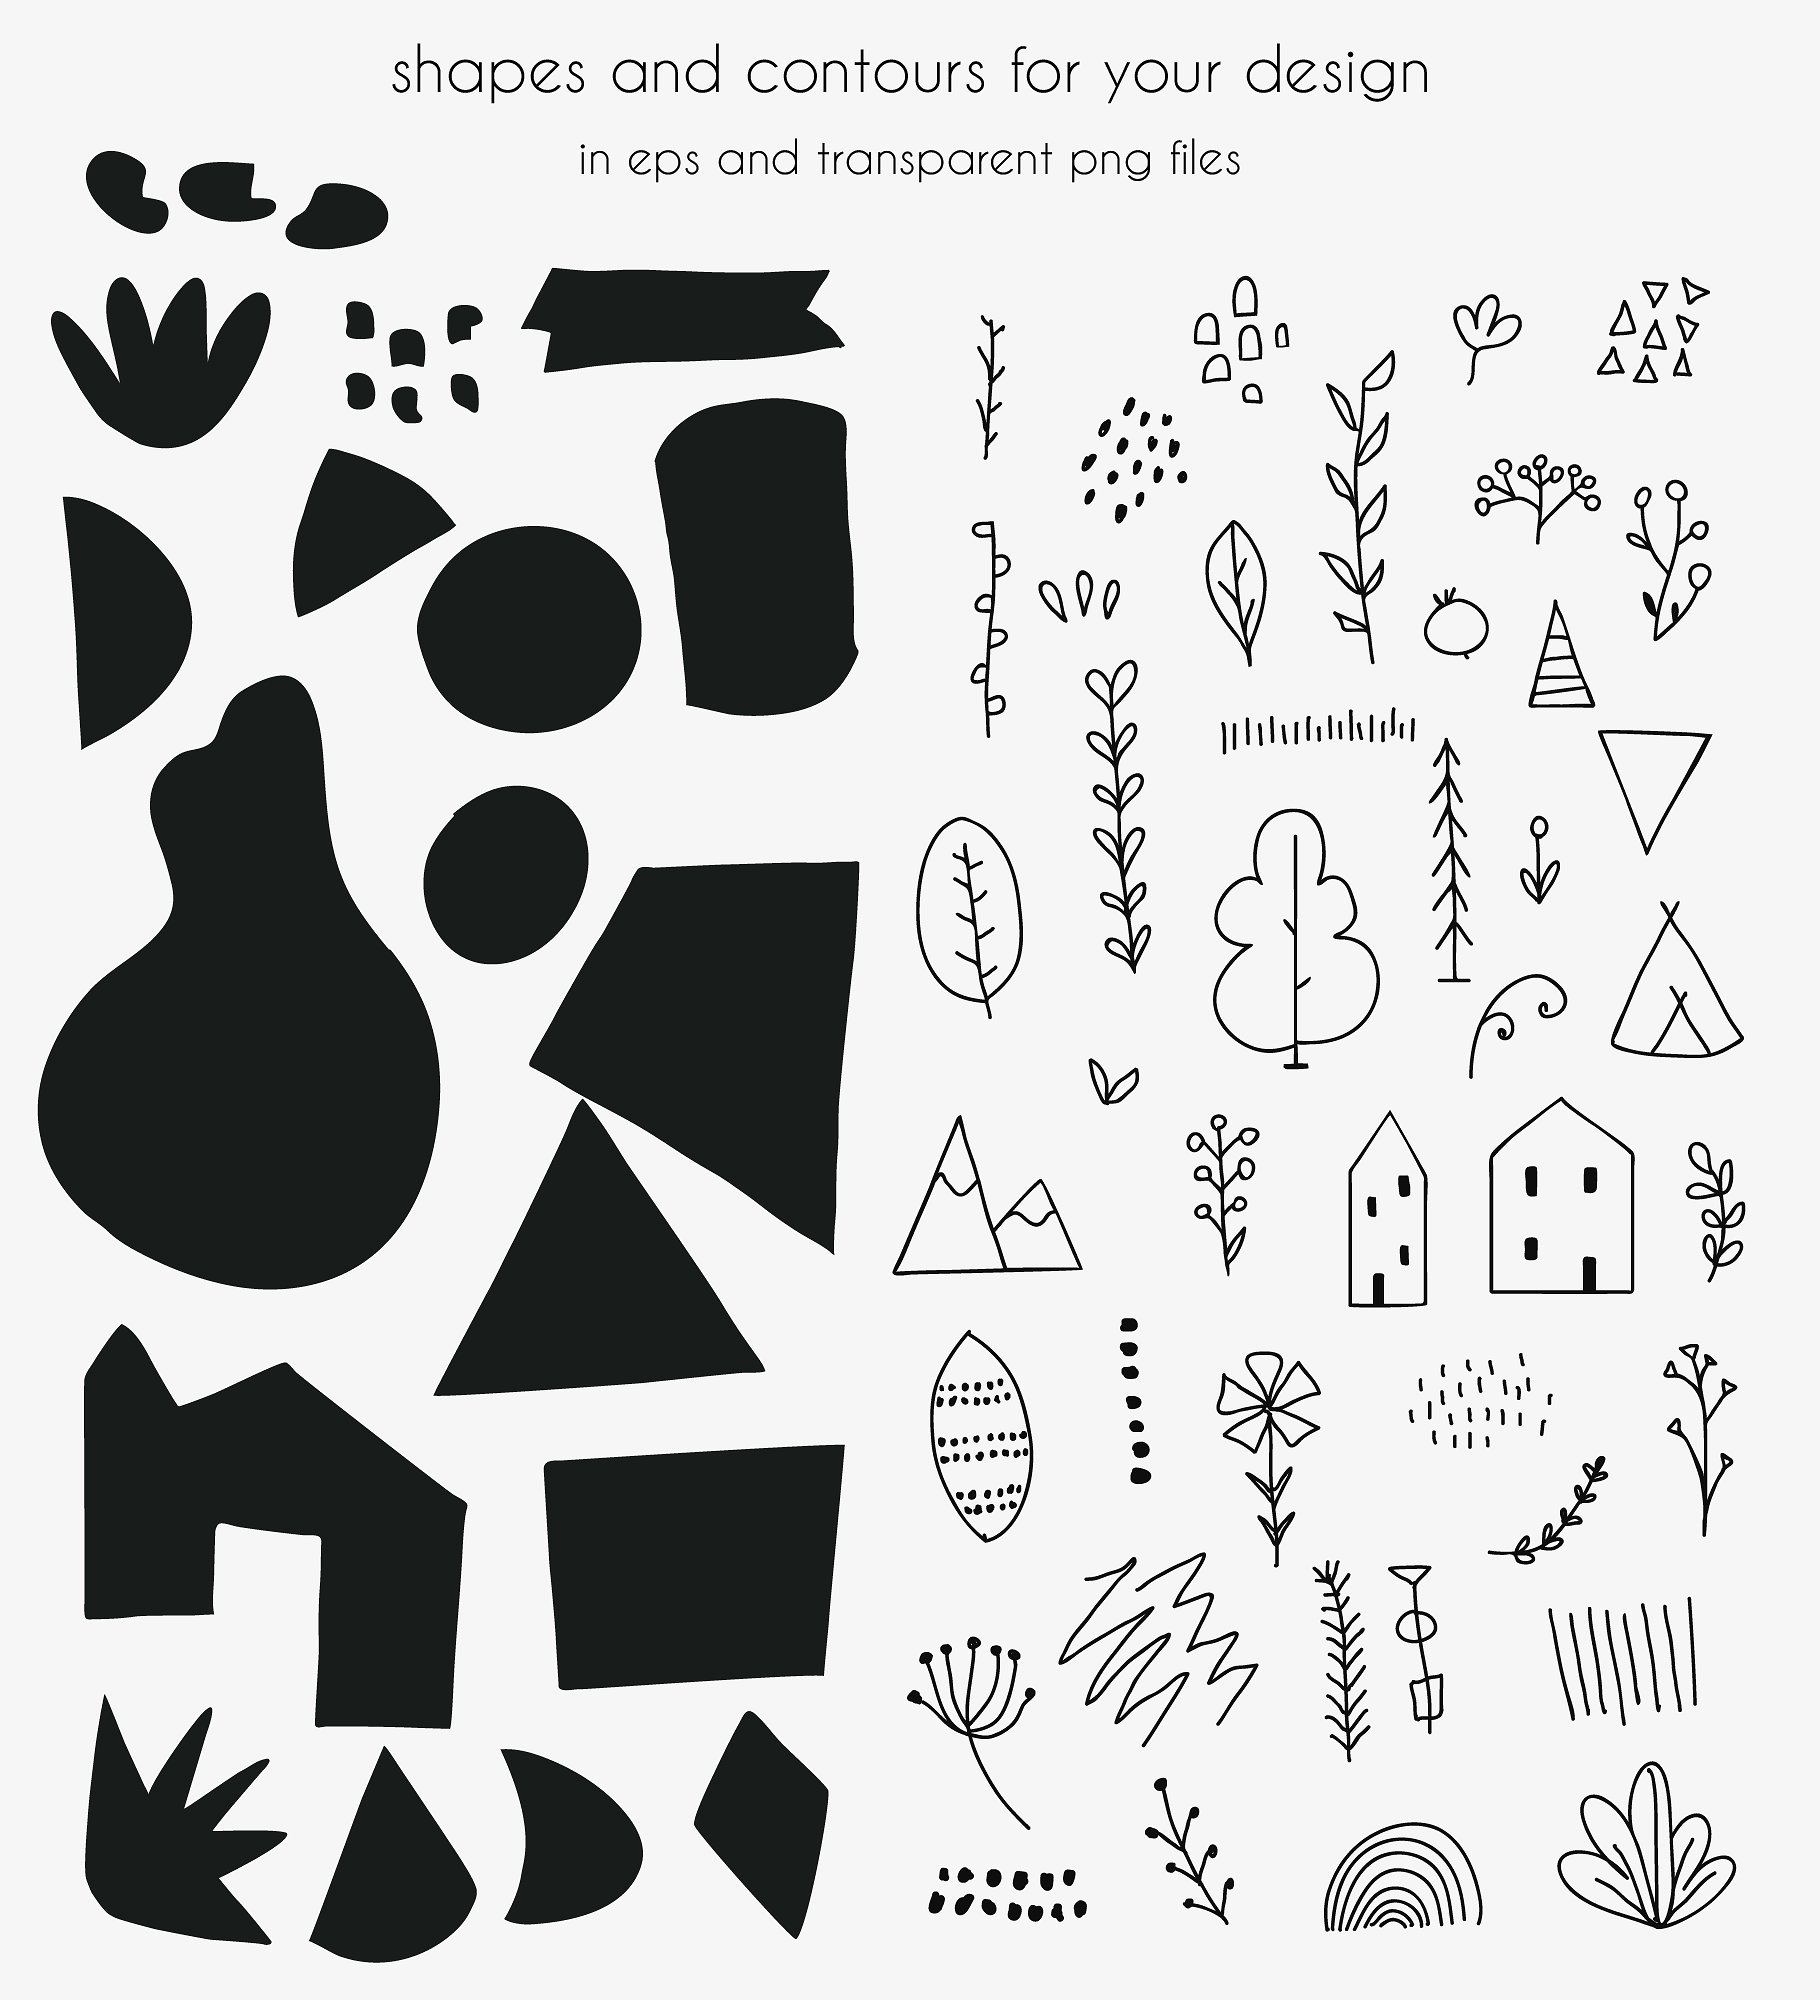 手绘矢量的几何拼贴图案合集 Hand Drawn Vector Geometric Collage Pattern Collection插图4